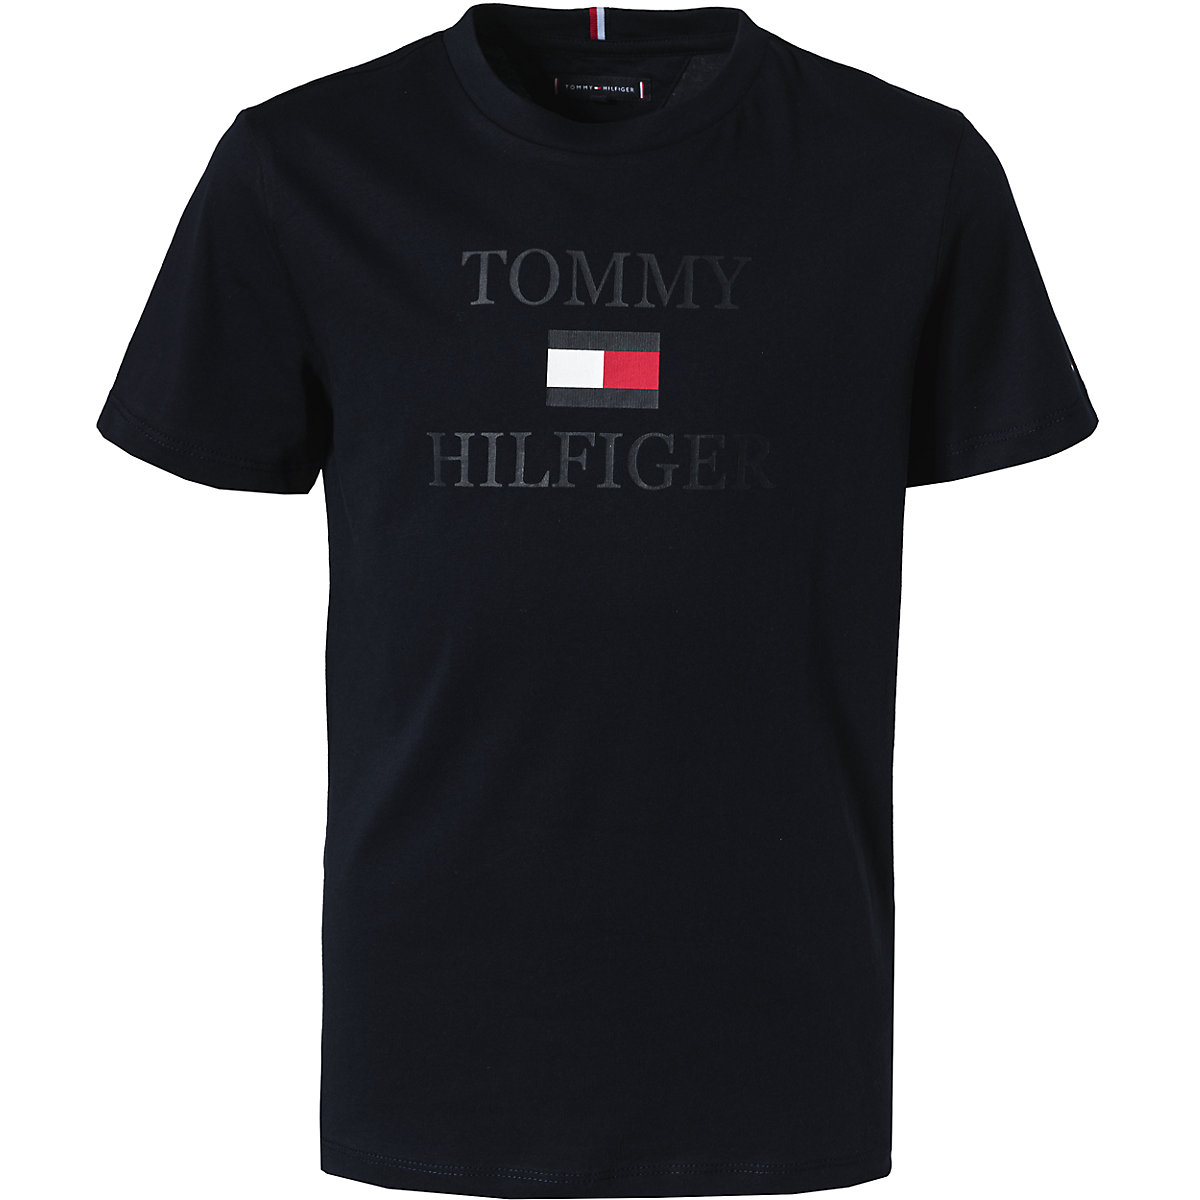 TOMMY HILFIGER T-Shirt für Jungen blau